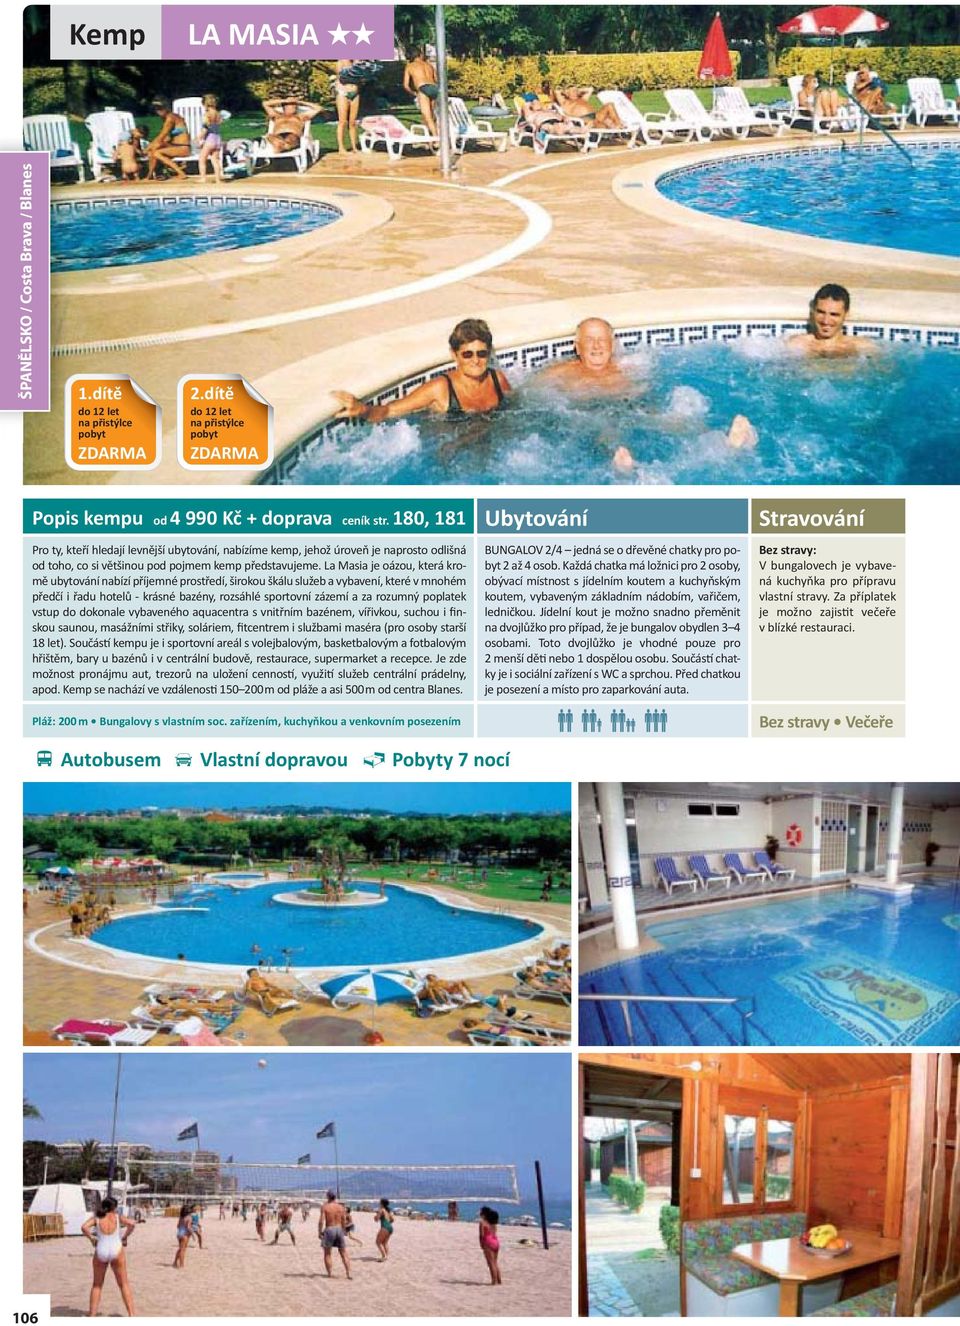 La Masia je oázou, která kromě ubytování nabízí příjemné prostředí, širokou škálu služeb a vybavení, které v mnohém předčí i řadu hotelů - krásné bazény, rozsáhlé sportovní zázemí a za rozumný